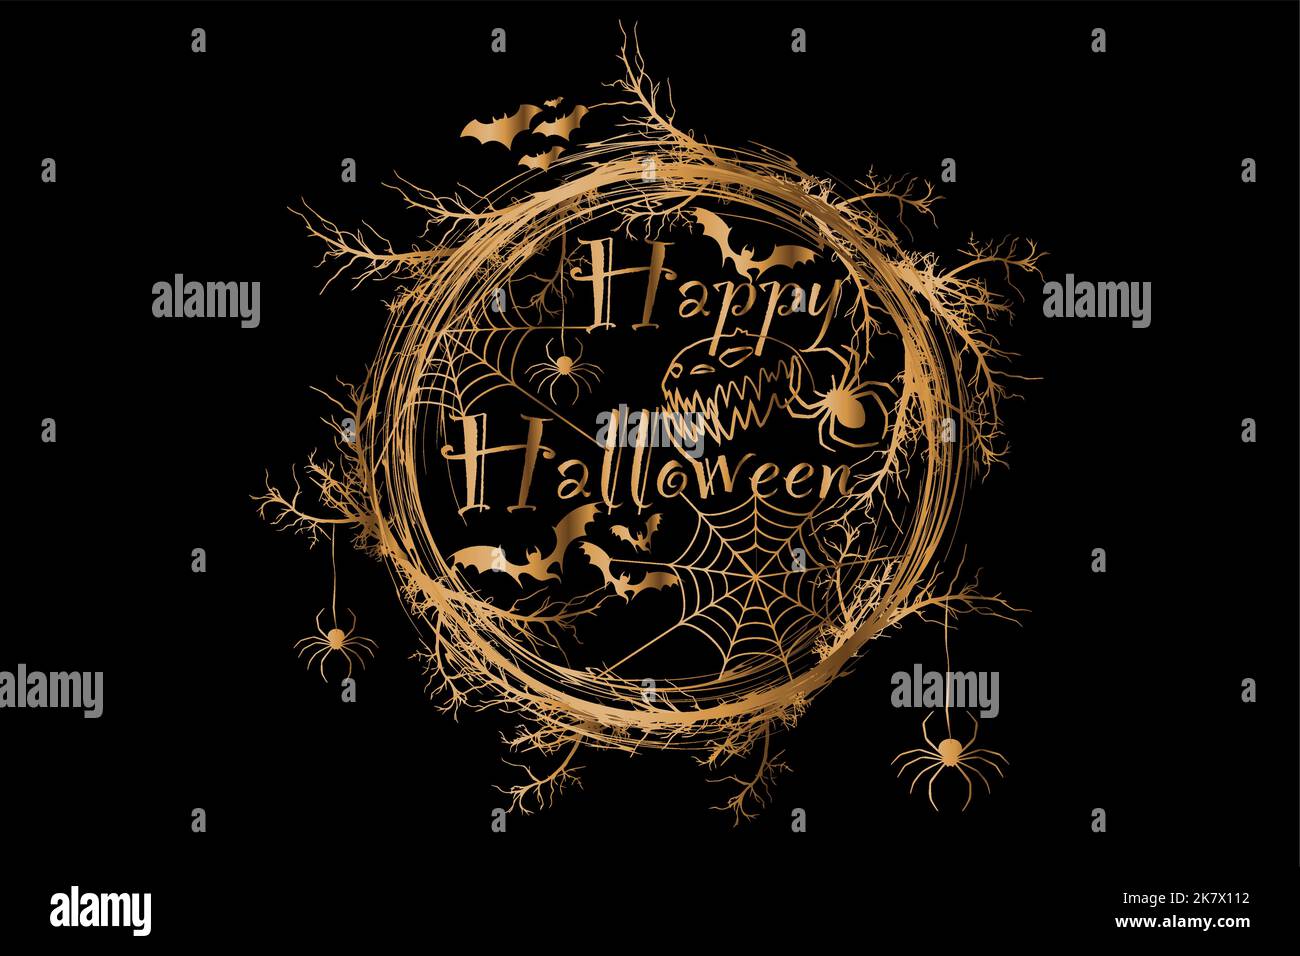 Happy Halloween Text Banner, corona d'oro horror di rami, un realistico bordo rotondo cornice di rami ritorti, Golden vettore illustrazione isolata Illustrazione Vettoriale